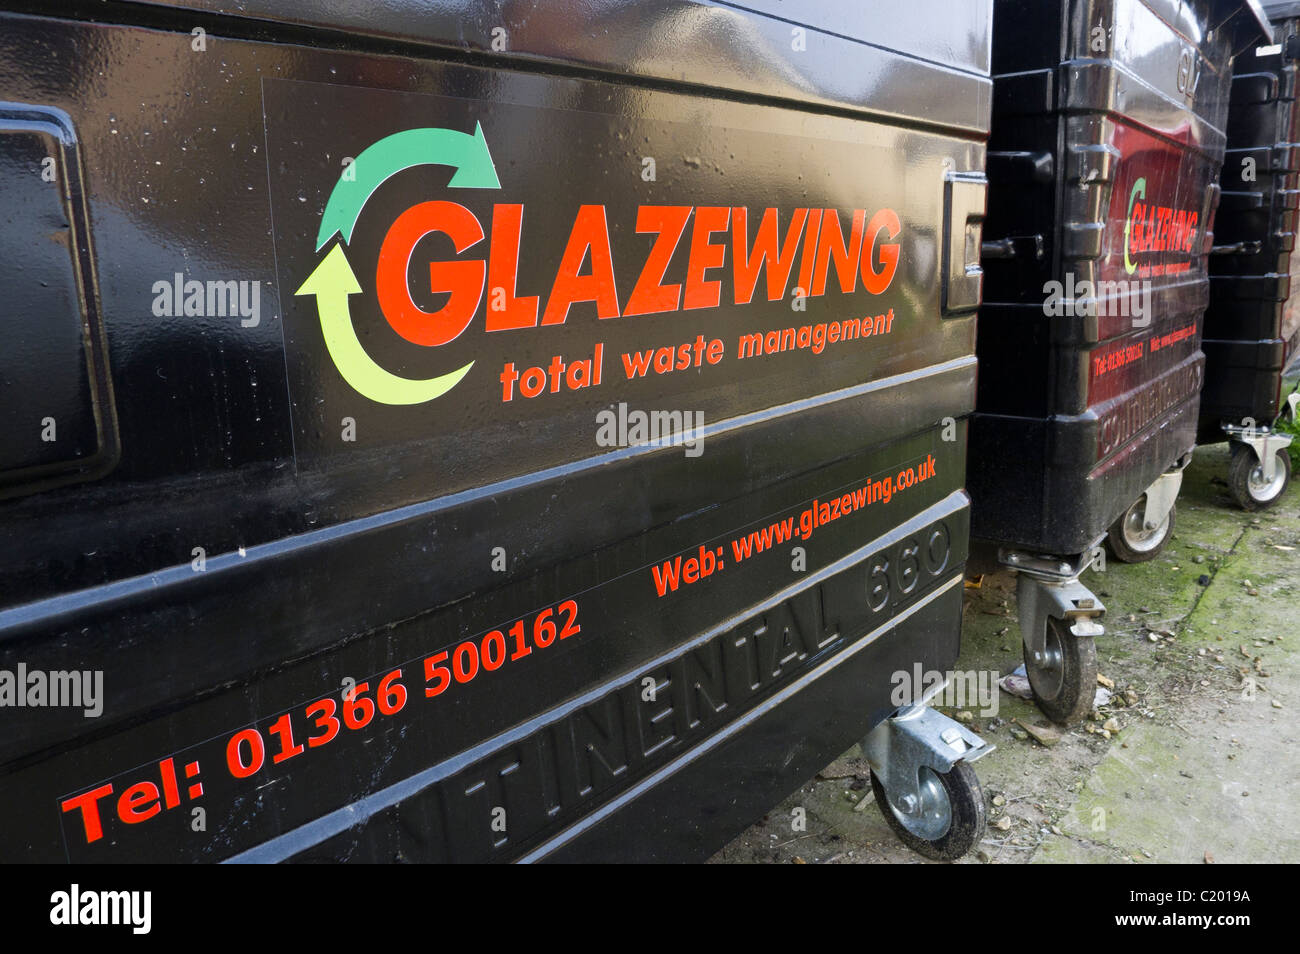 Glazewing-Wheelie-Behälter für die Entsorgung. Stockfoto